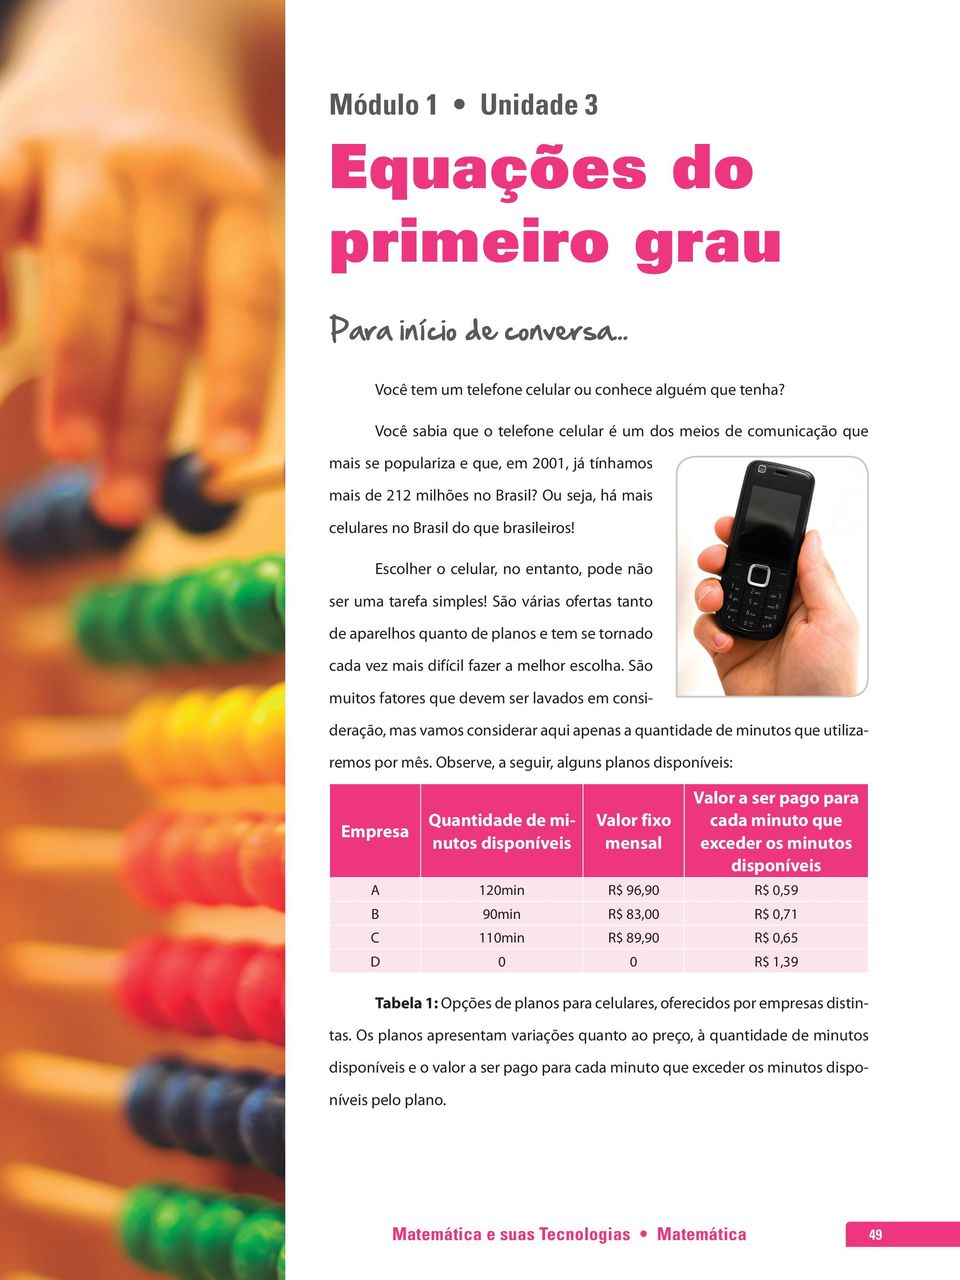 Ou seja, há mais celulares no Brasil do que brasileiros! Escolher o celular, no entanto, pode não ser uma tarefa simples!